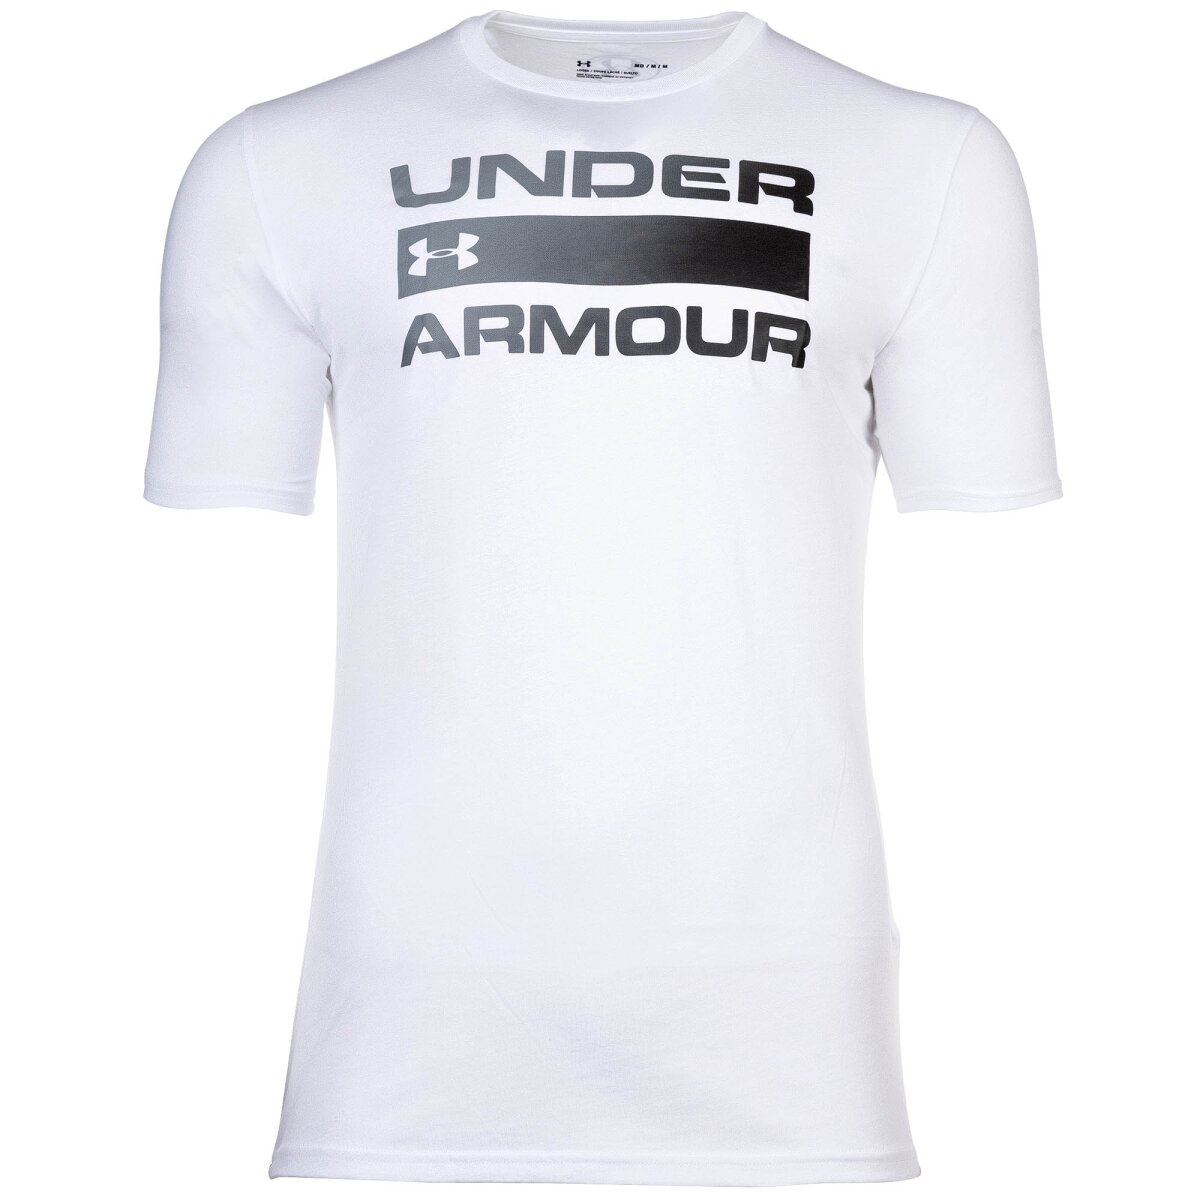 Under Armour Herren T-Shirt - Rundhals, Logo, 28,45 €